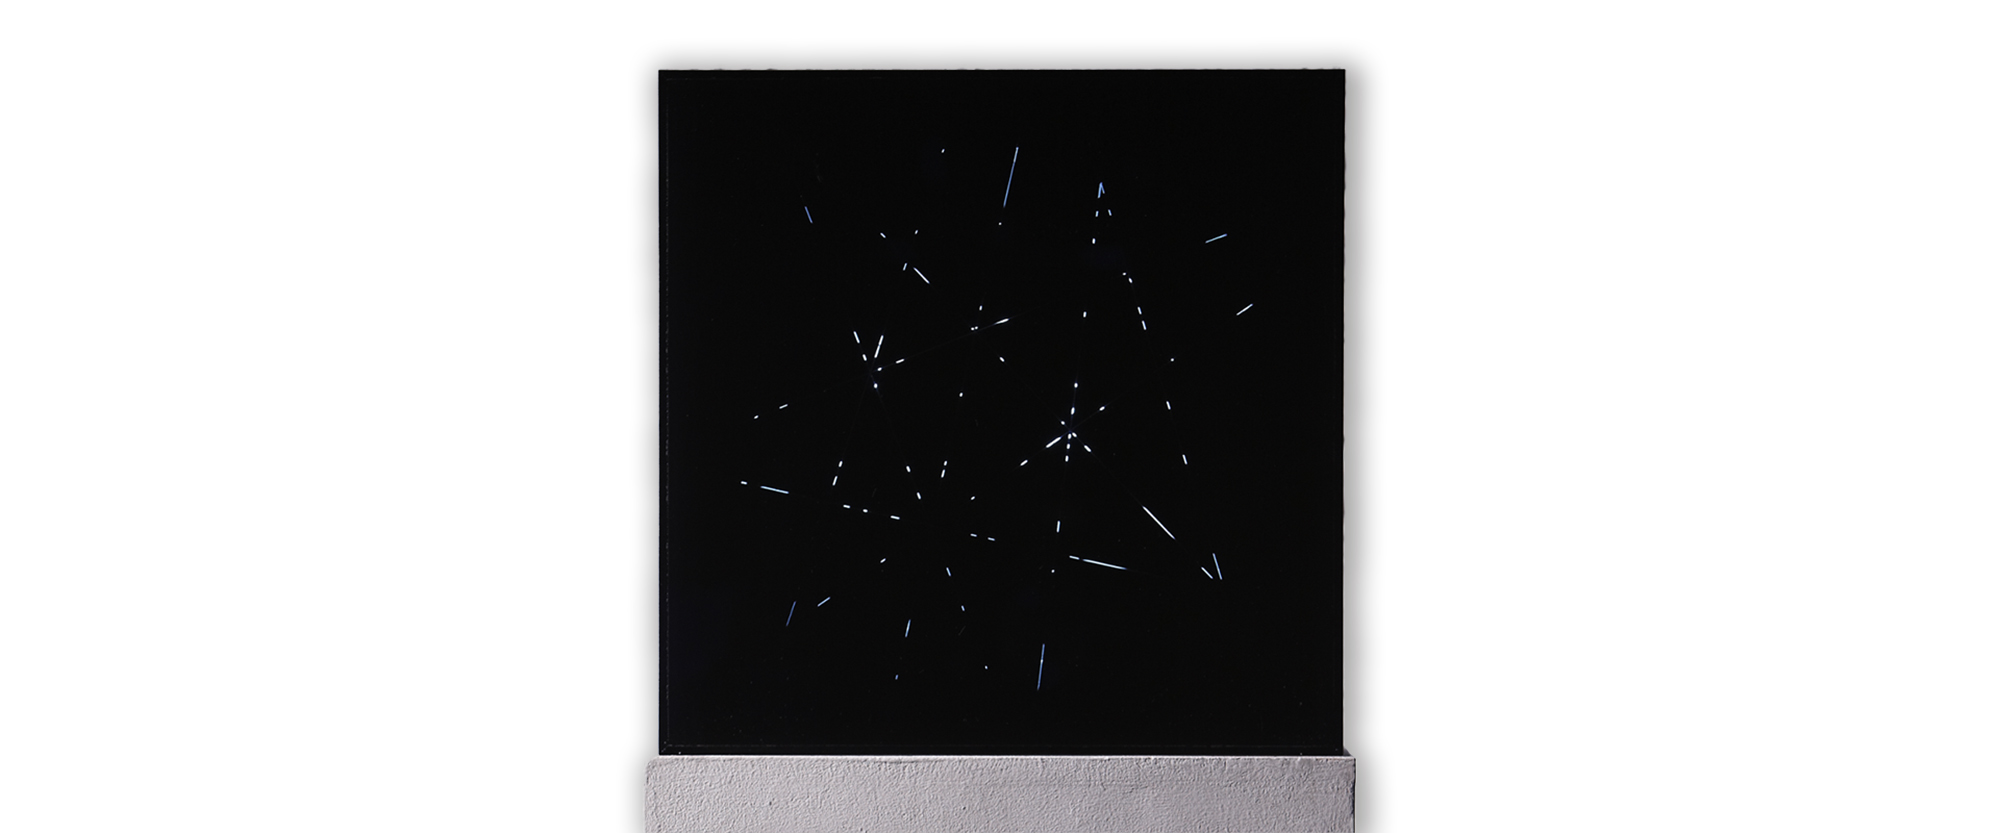 Kleines Nefta Objekt - 2020, Siebdruck auf Acrlyglas, Leuchtstoffröhre, E-Motor (0,5 U/min), Auflage 4 Ex., 40 x 40 x 10 cm